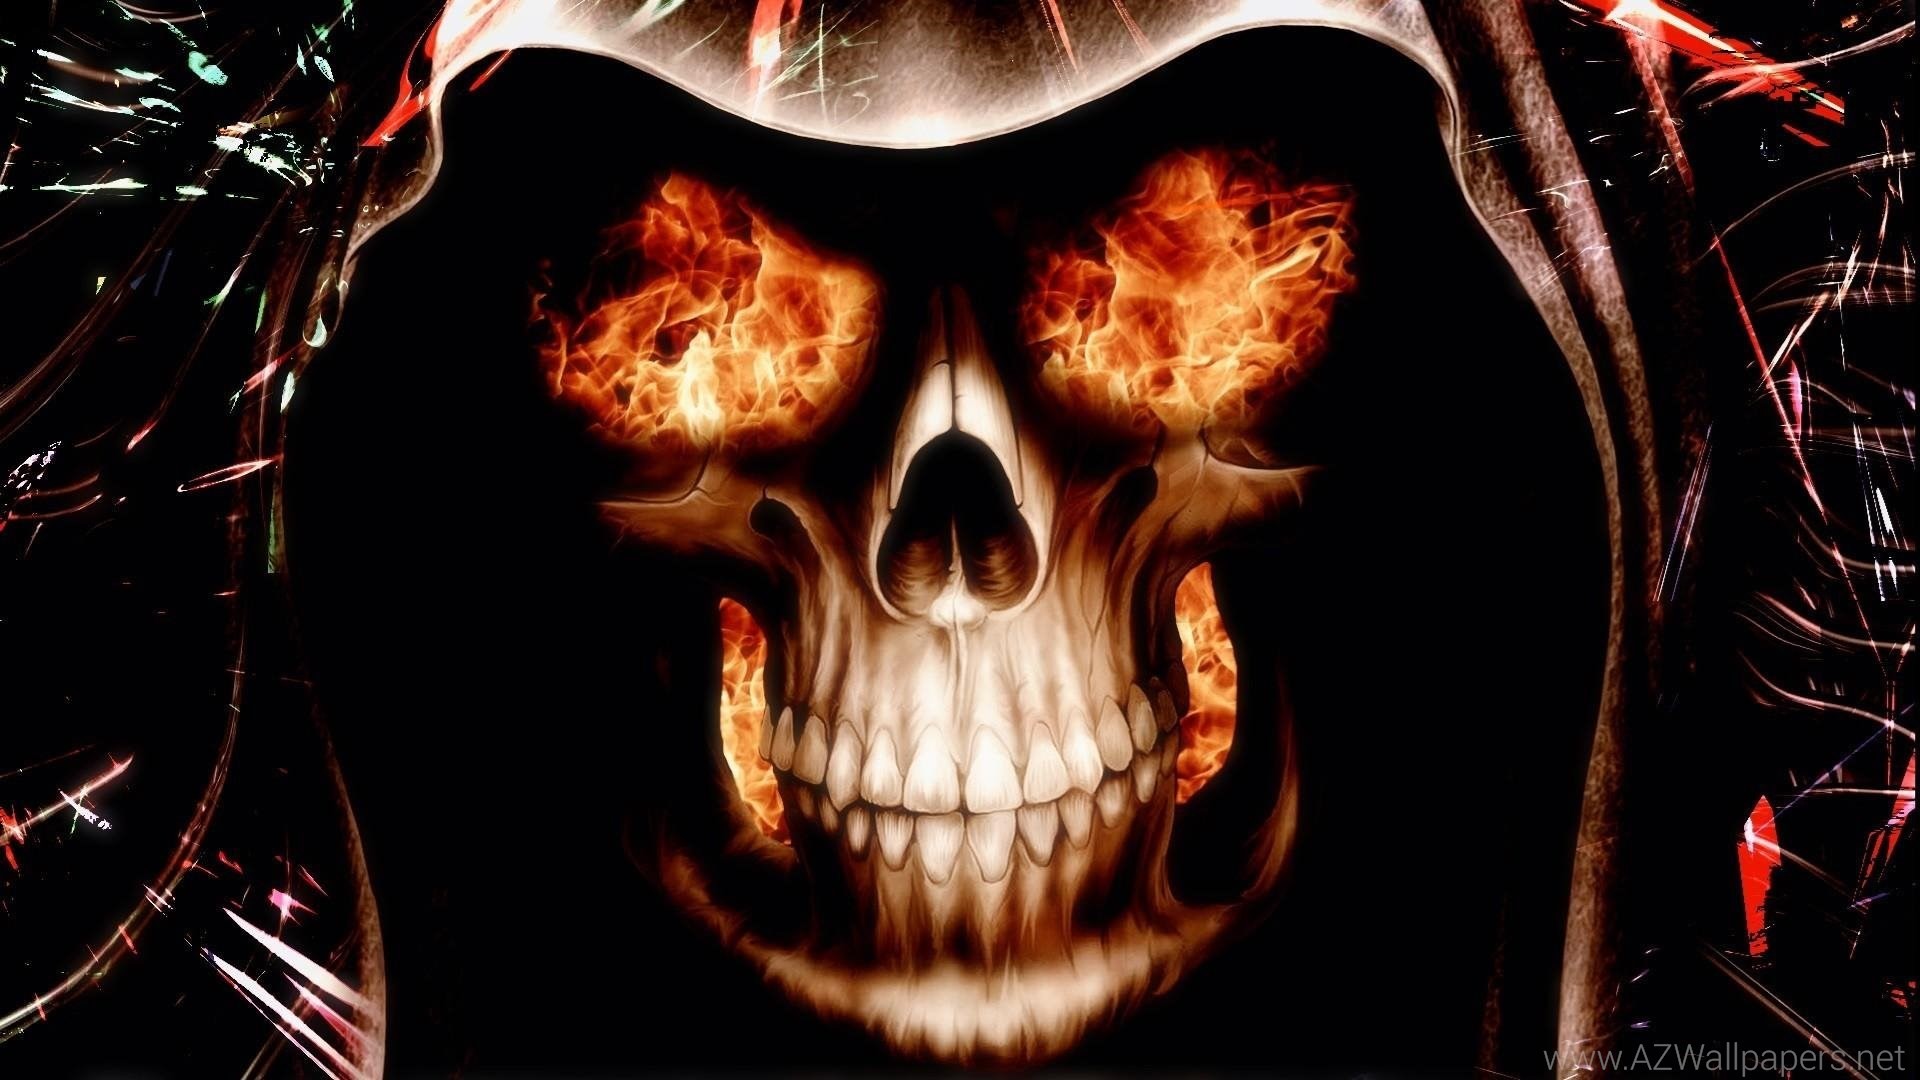 Skull Wallpapers Hd Fire Skull Wallpapers - Skull Wallpaper Fire - HD Wallpaper 